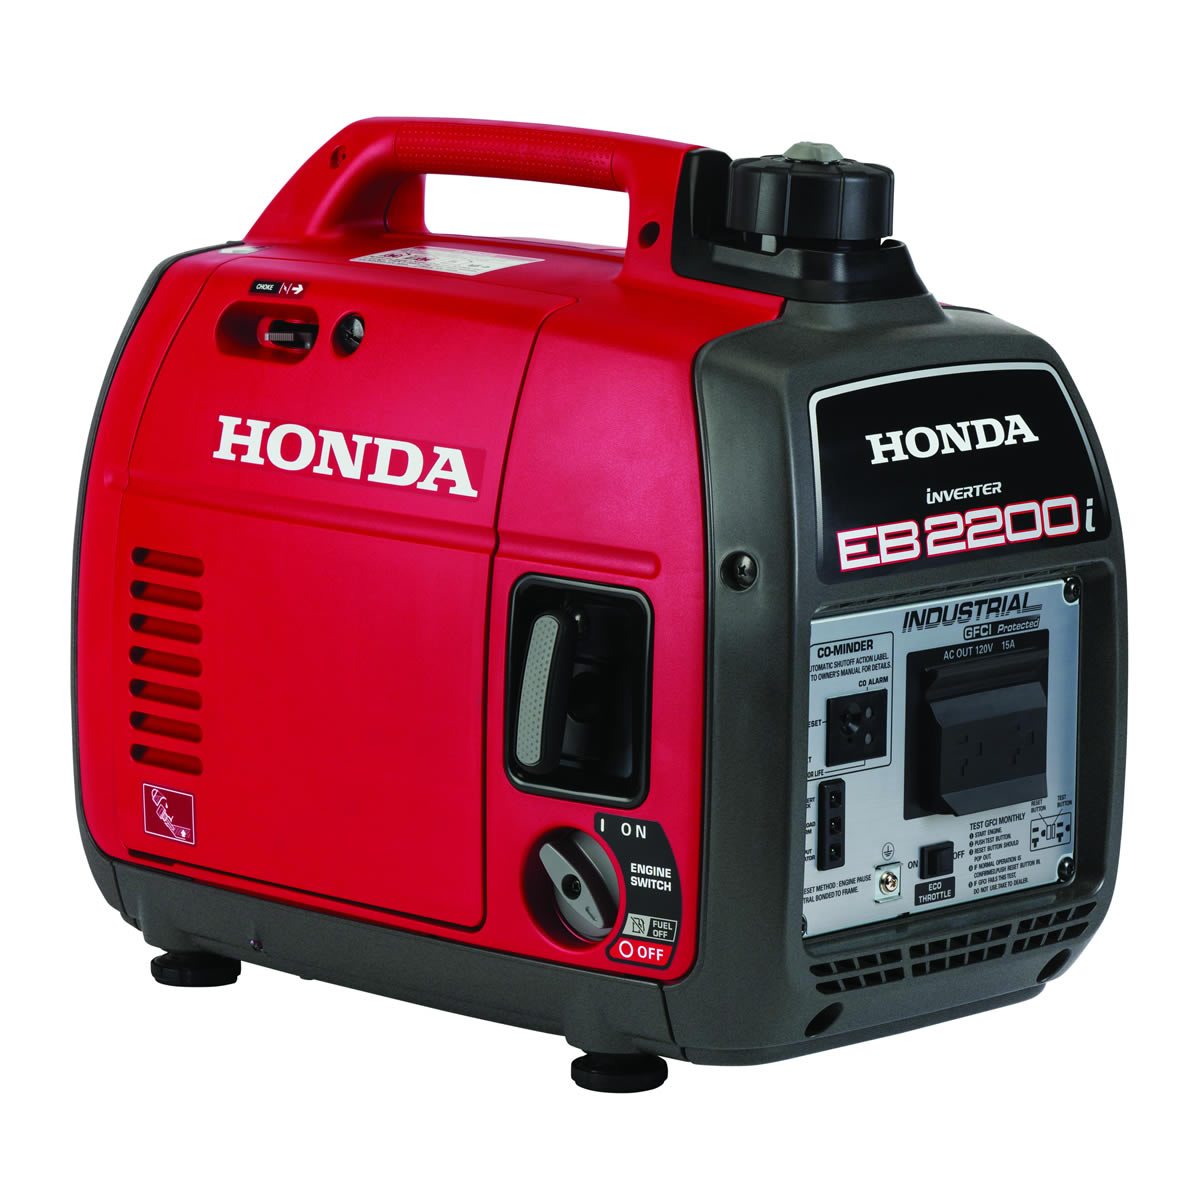 What Is Honda Generator?